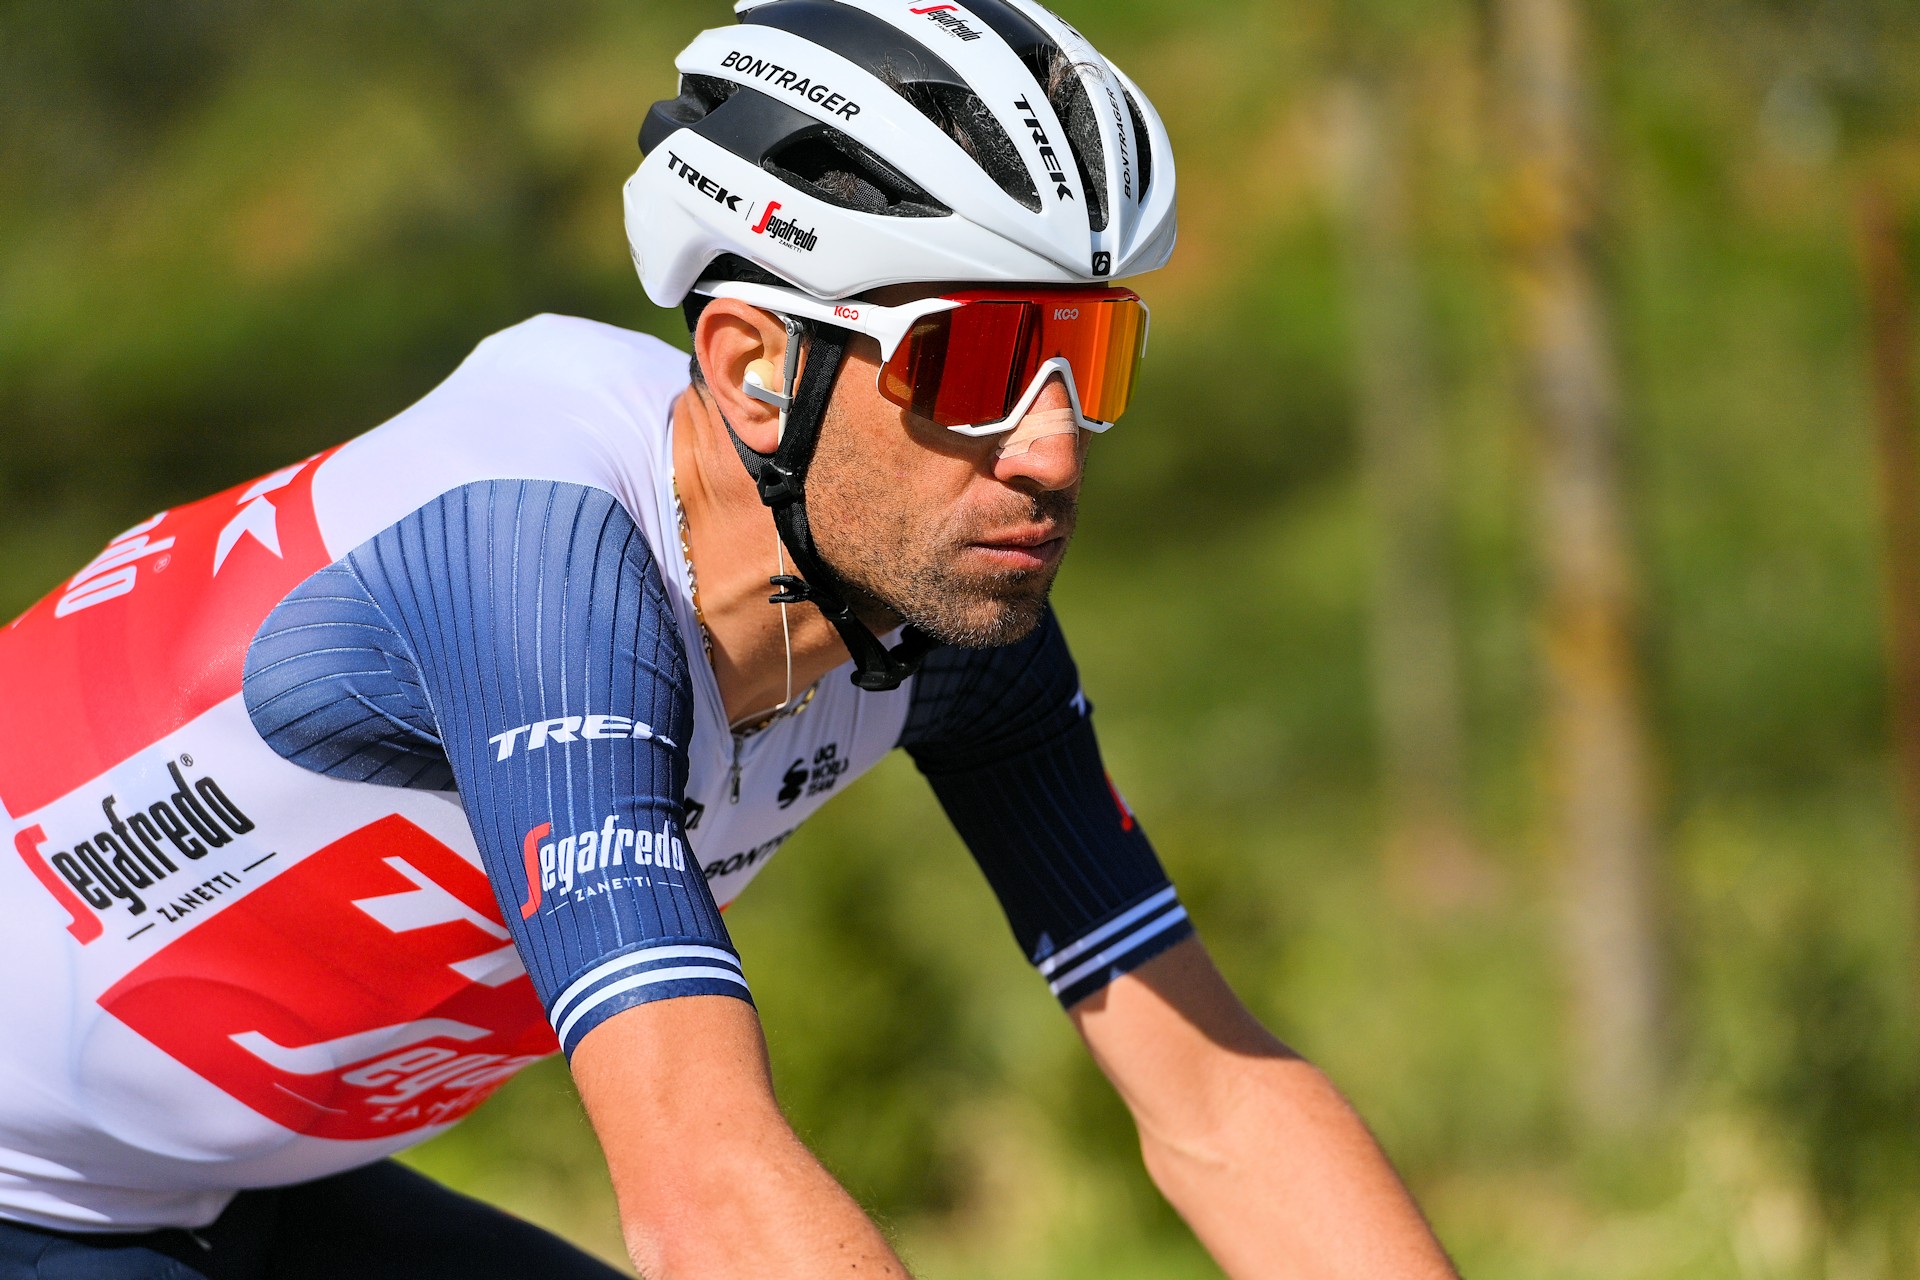 Vincenzo Nibali z usztywniaczem, występ w Giro nadal niepewny